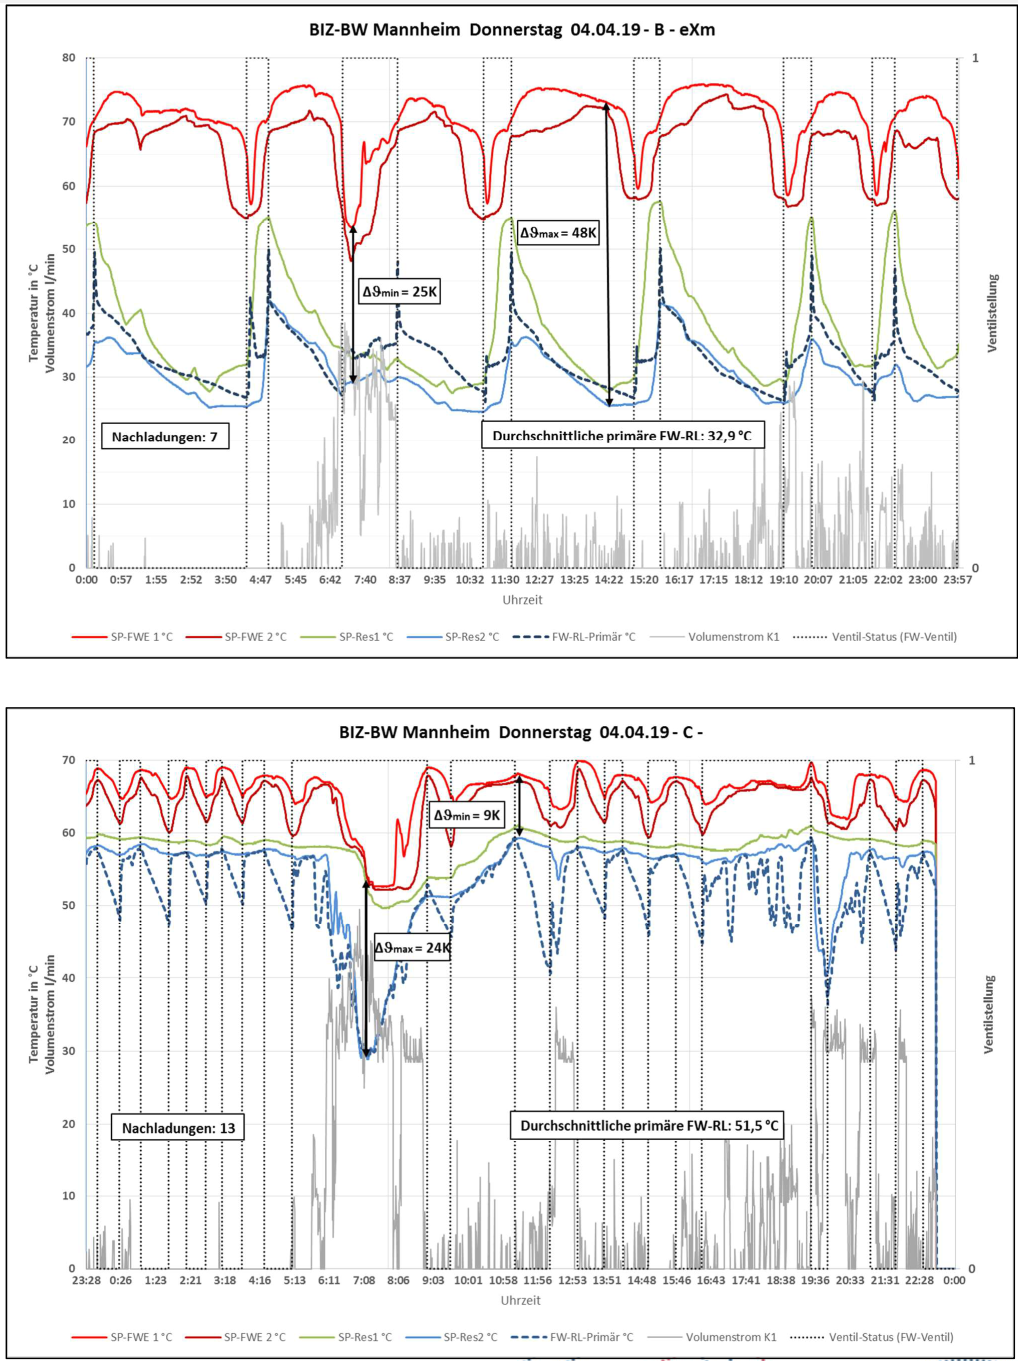 ExM Egzergia Maszyna cieplna wykresy porównanie systemów praca w tygodniu